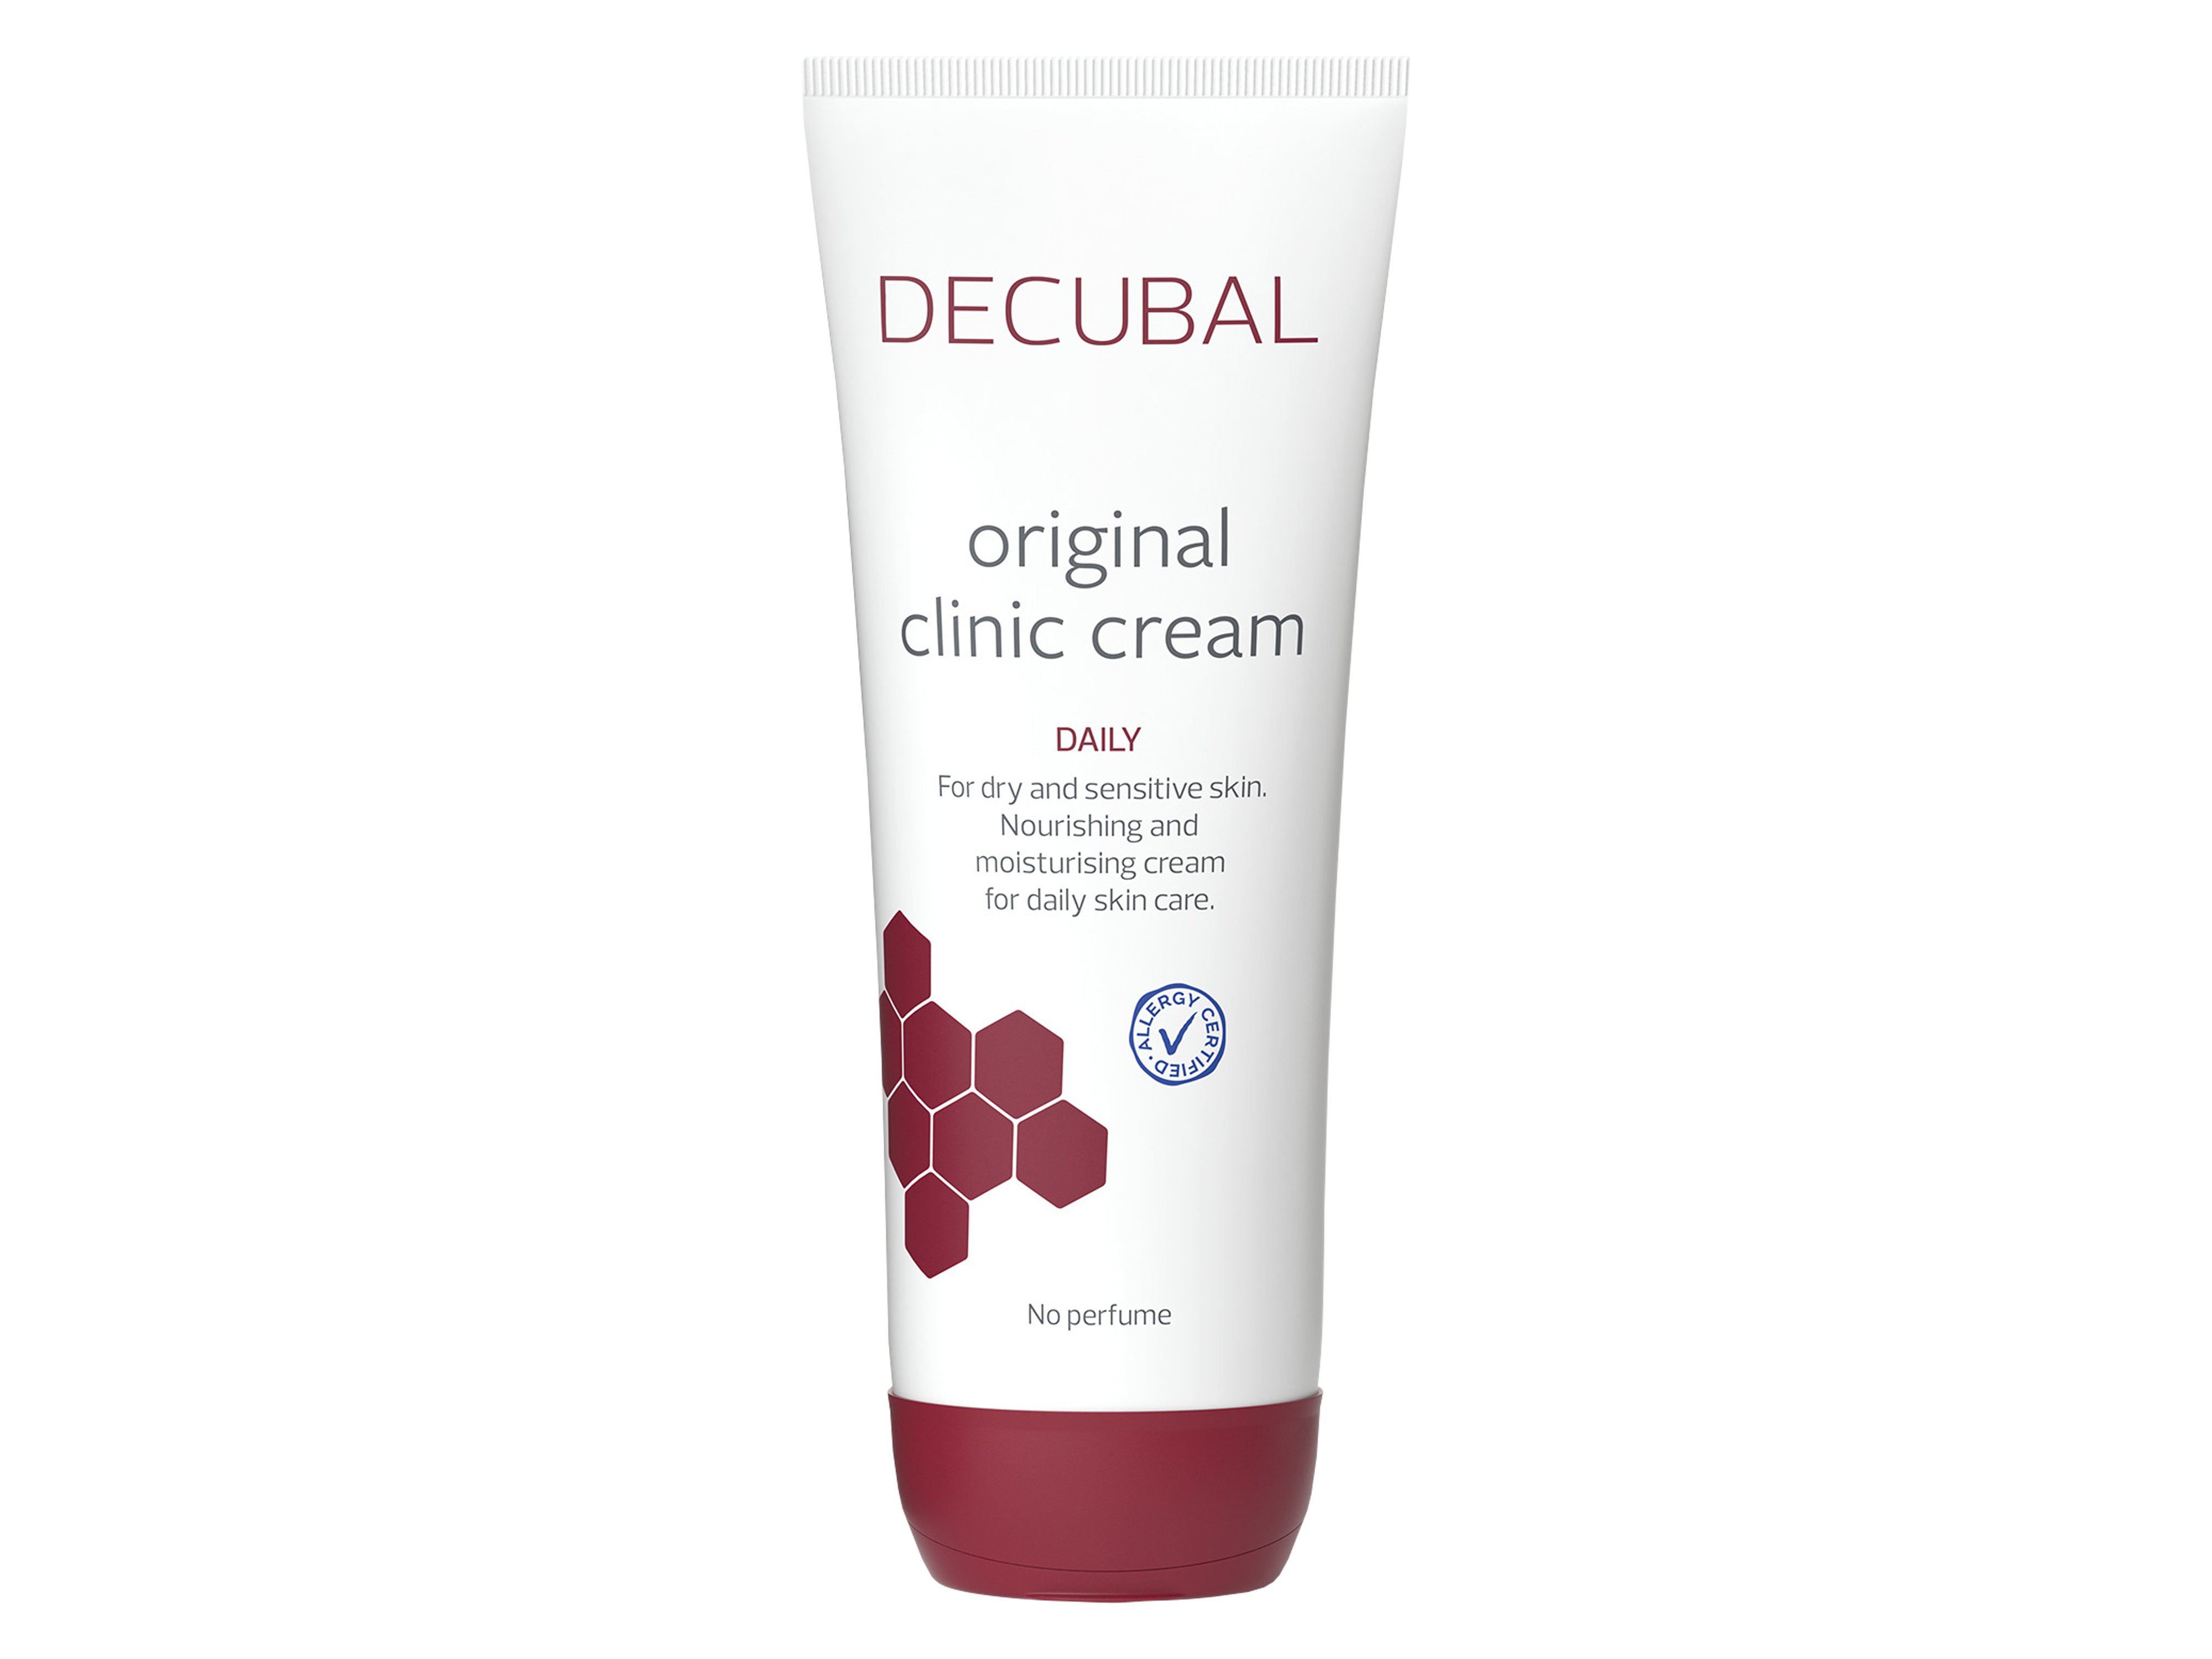 Decubal Original Clinic Cream Daily, 250 gram